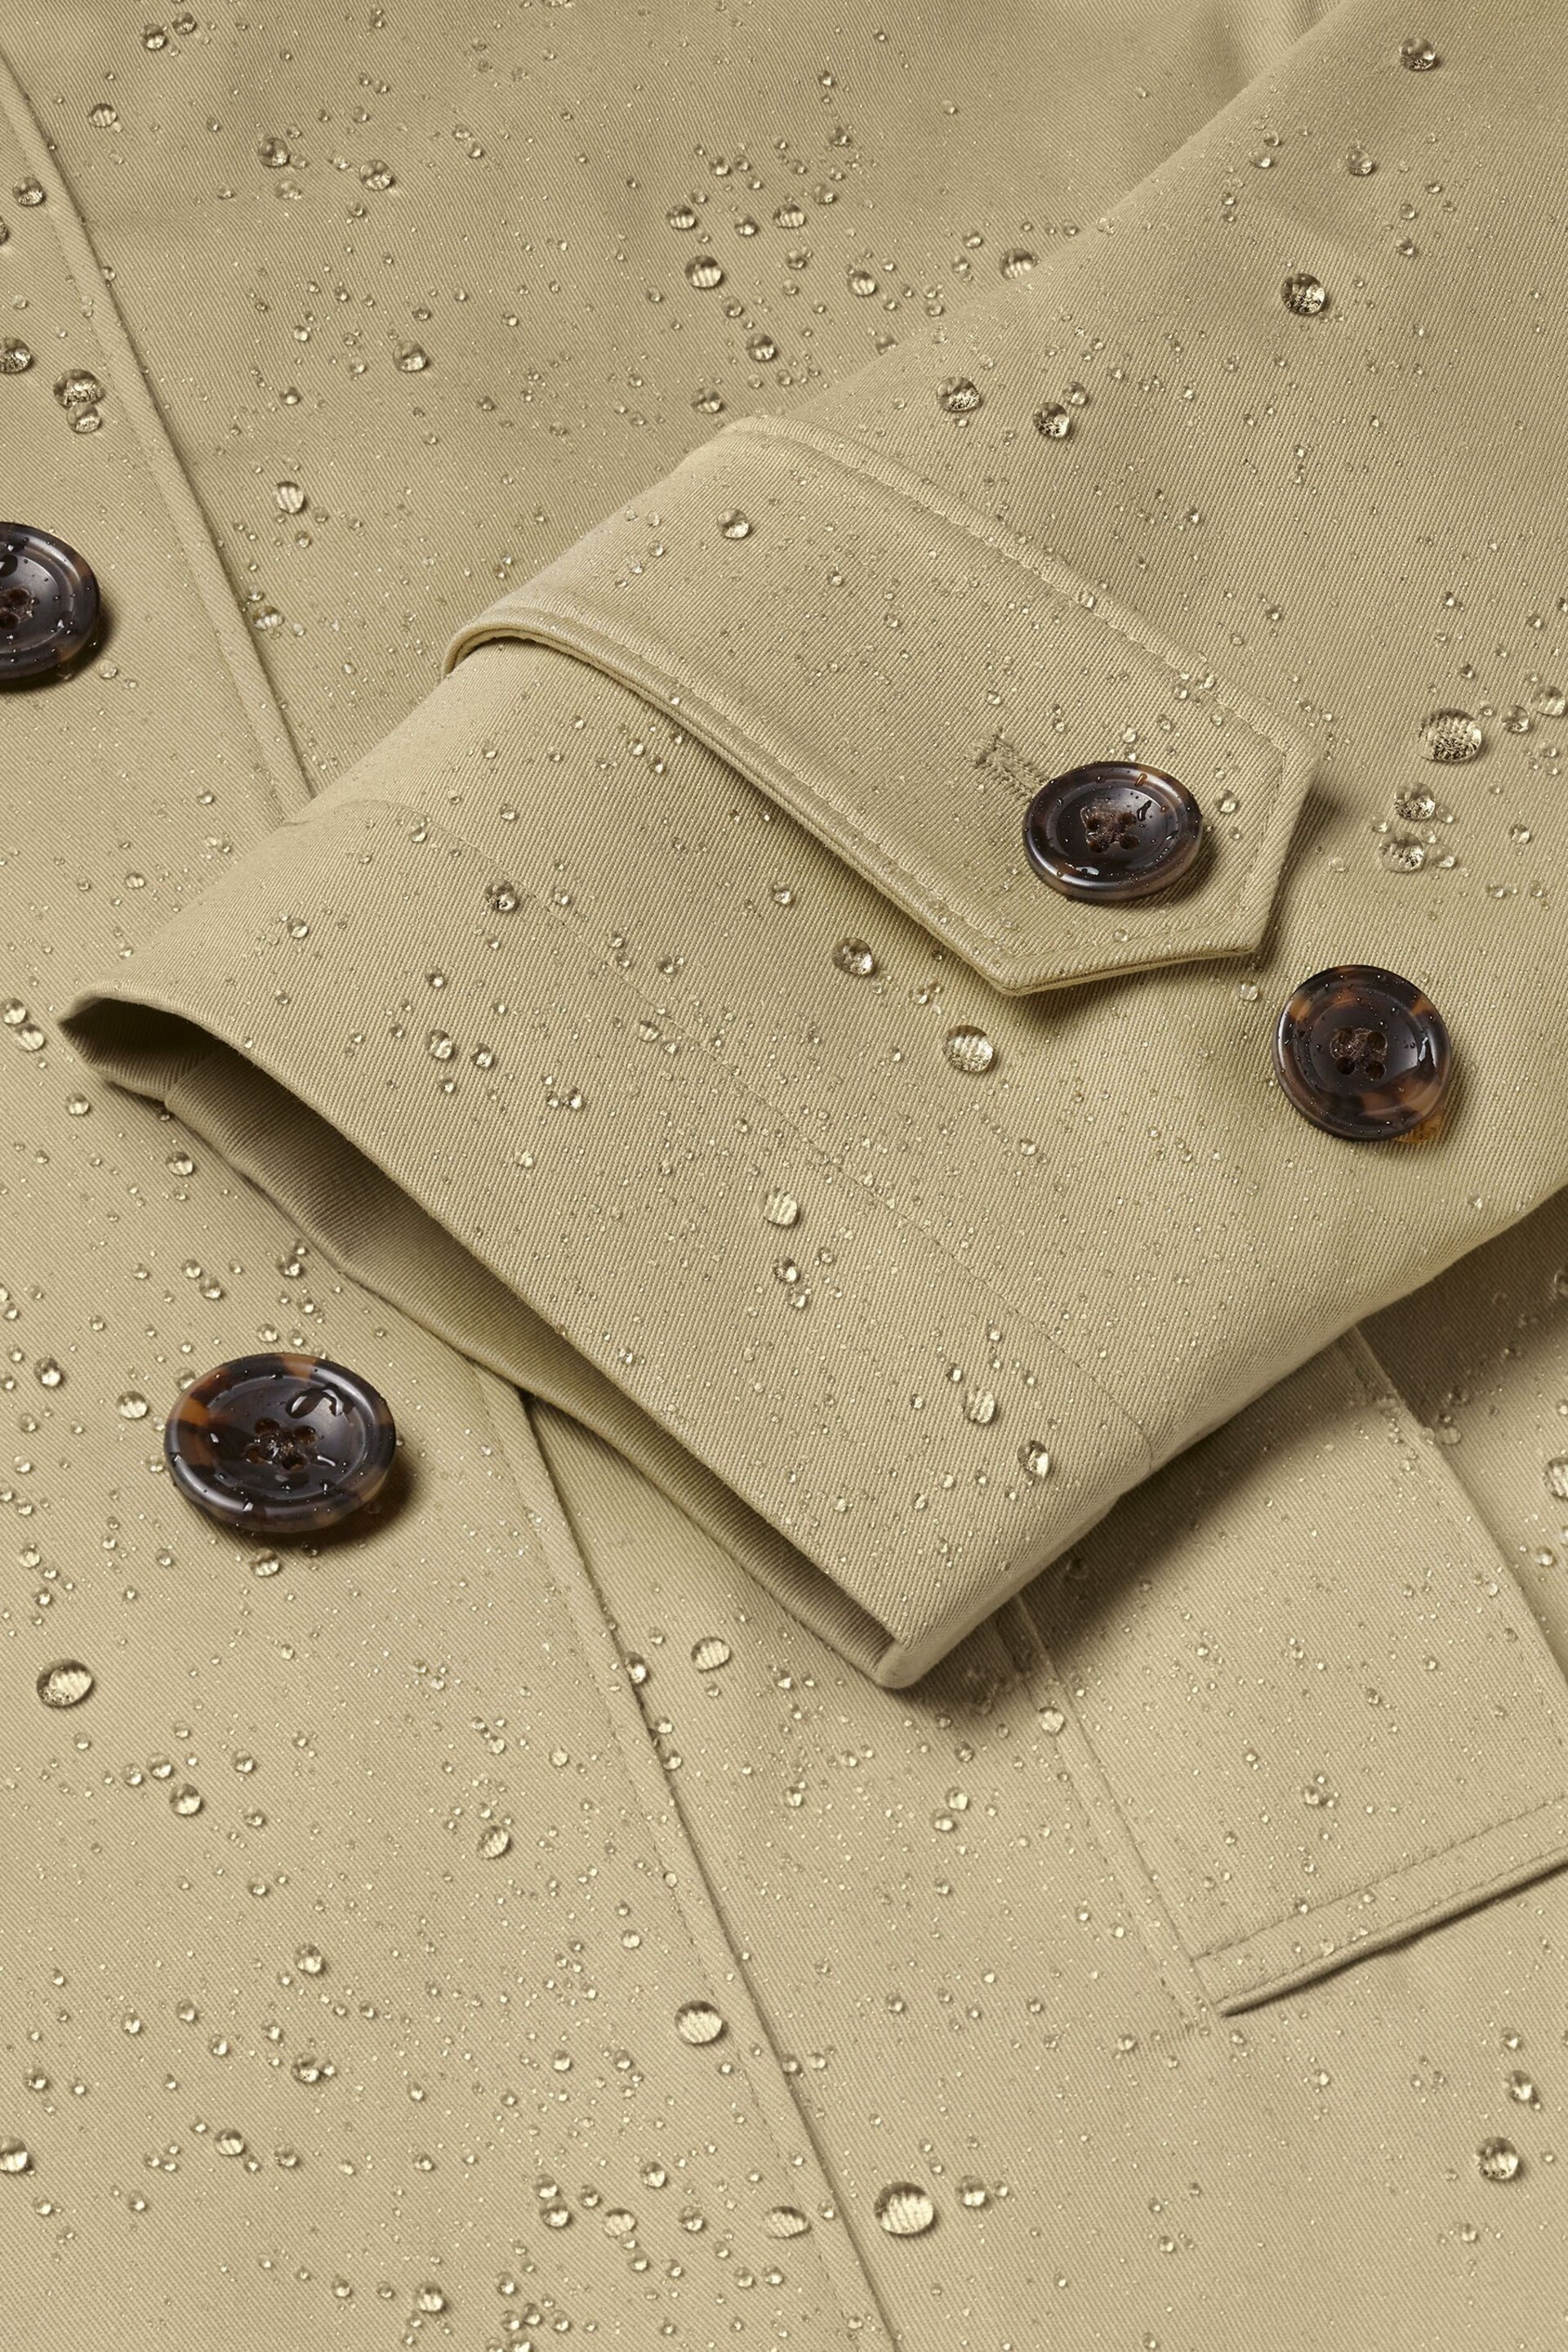 Charles Tyrwhitt Natural Classic Showerproof Cotton Raincoat - Image 4 of 4